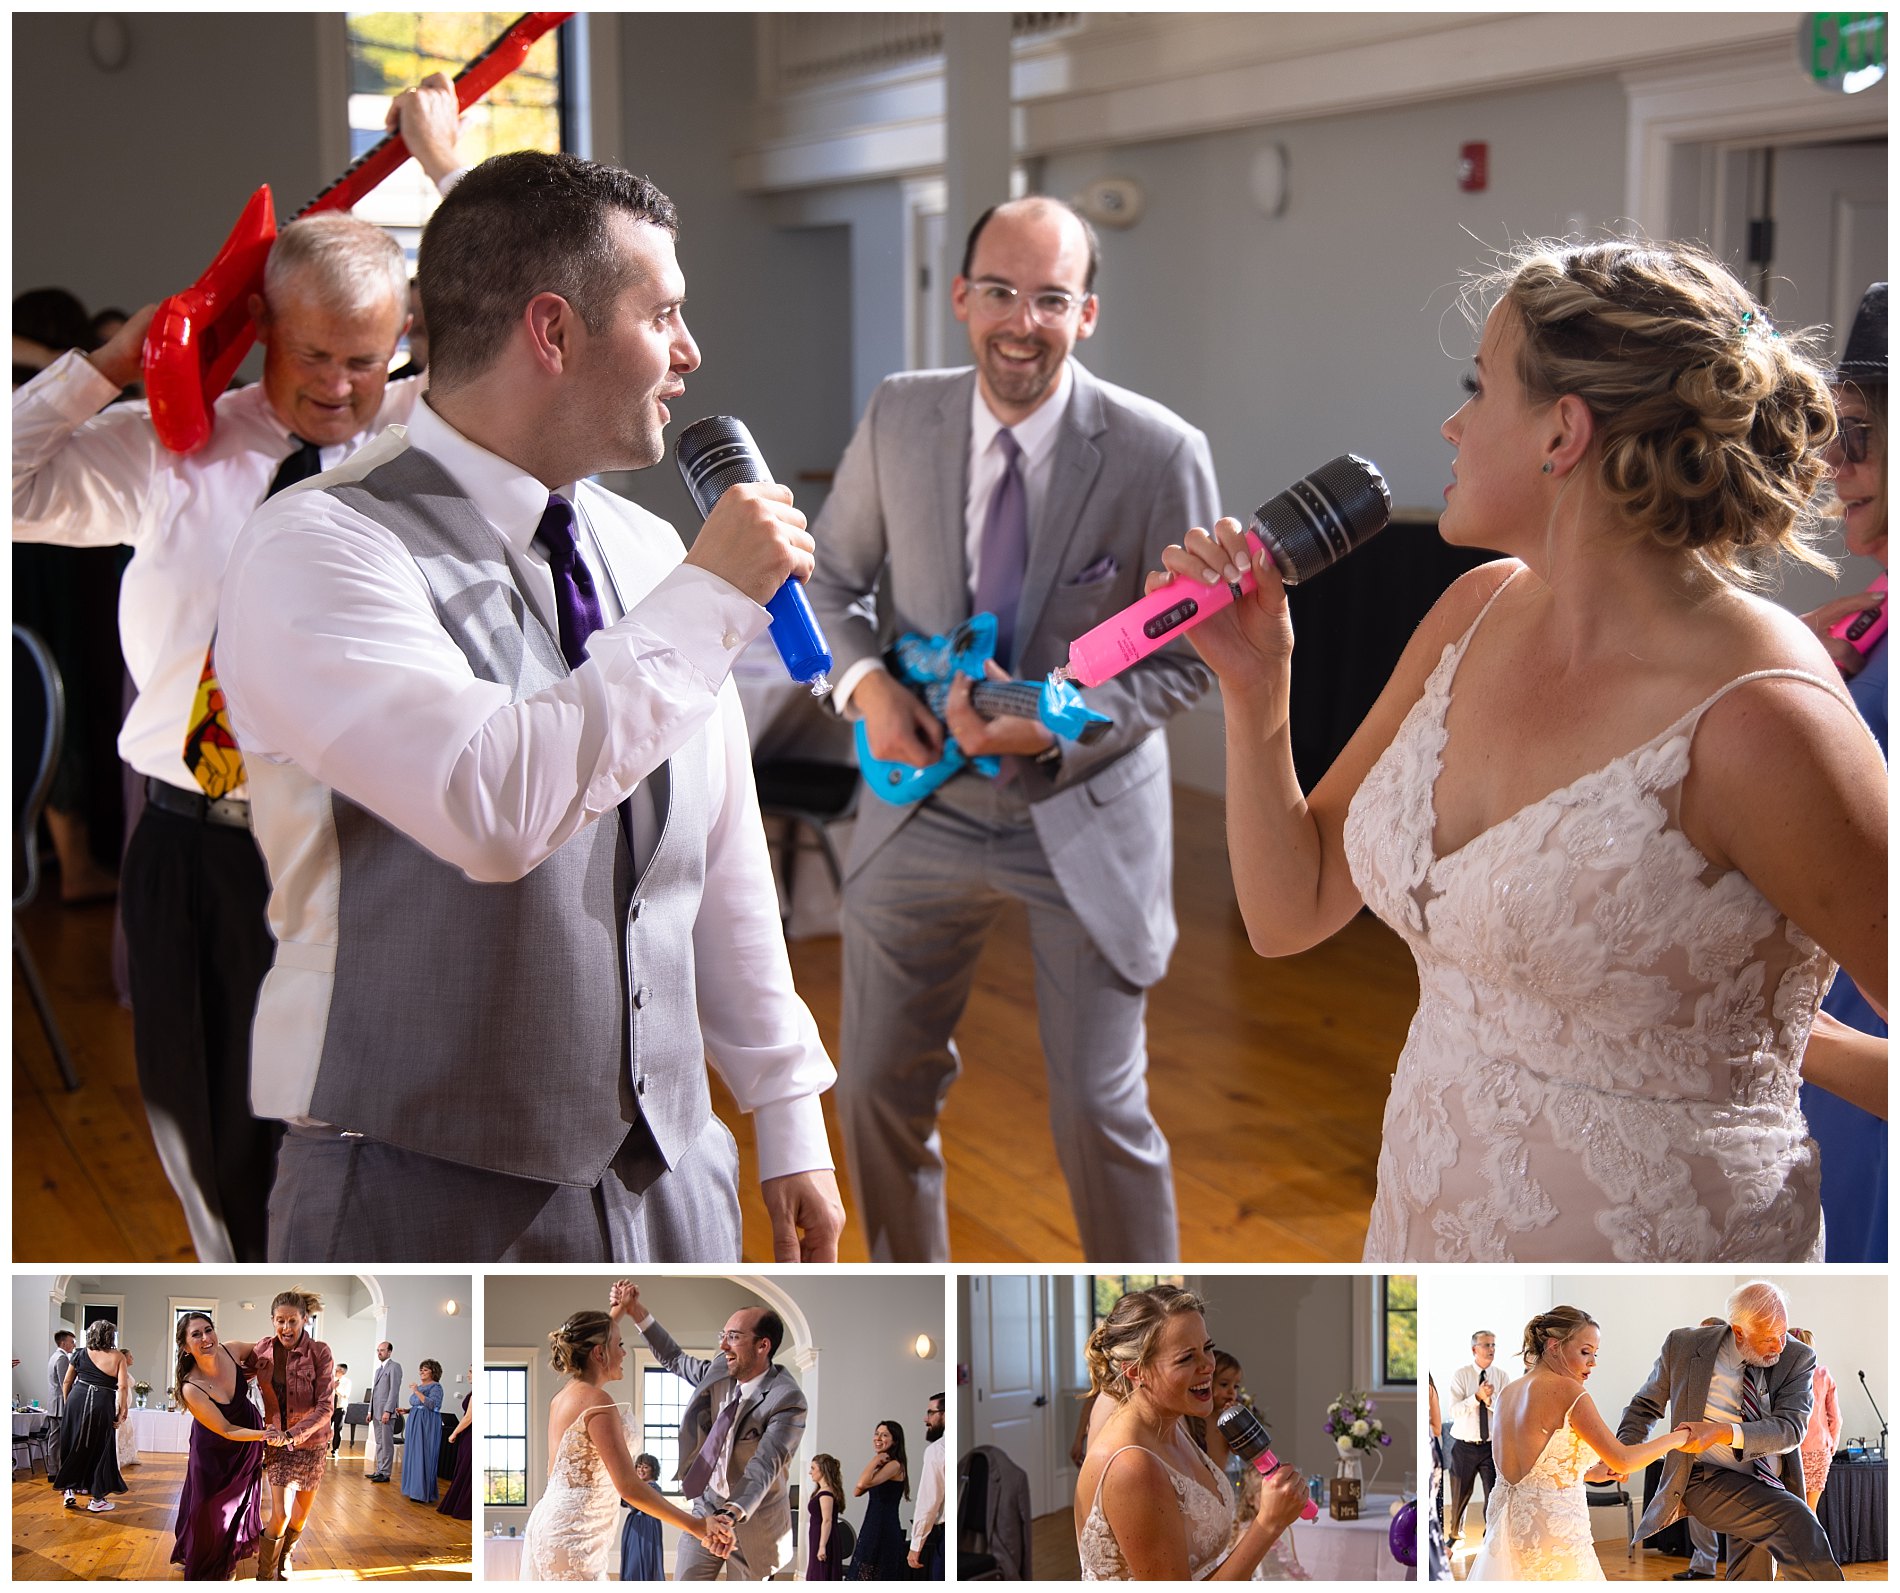 wedding dance floor fun with prop microphones and instruments